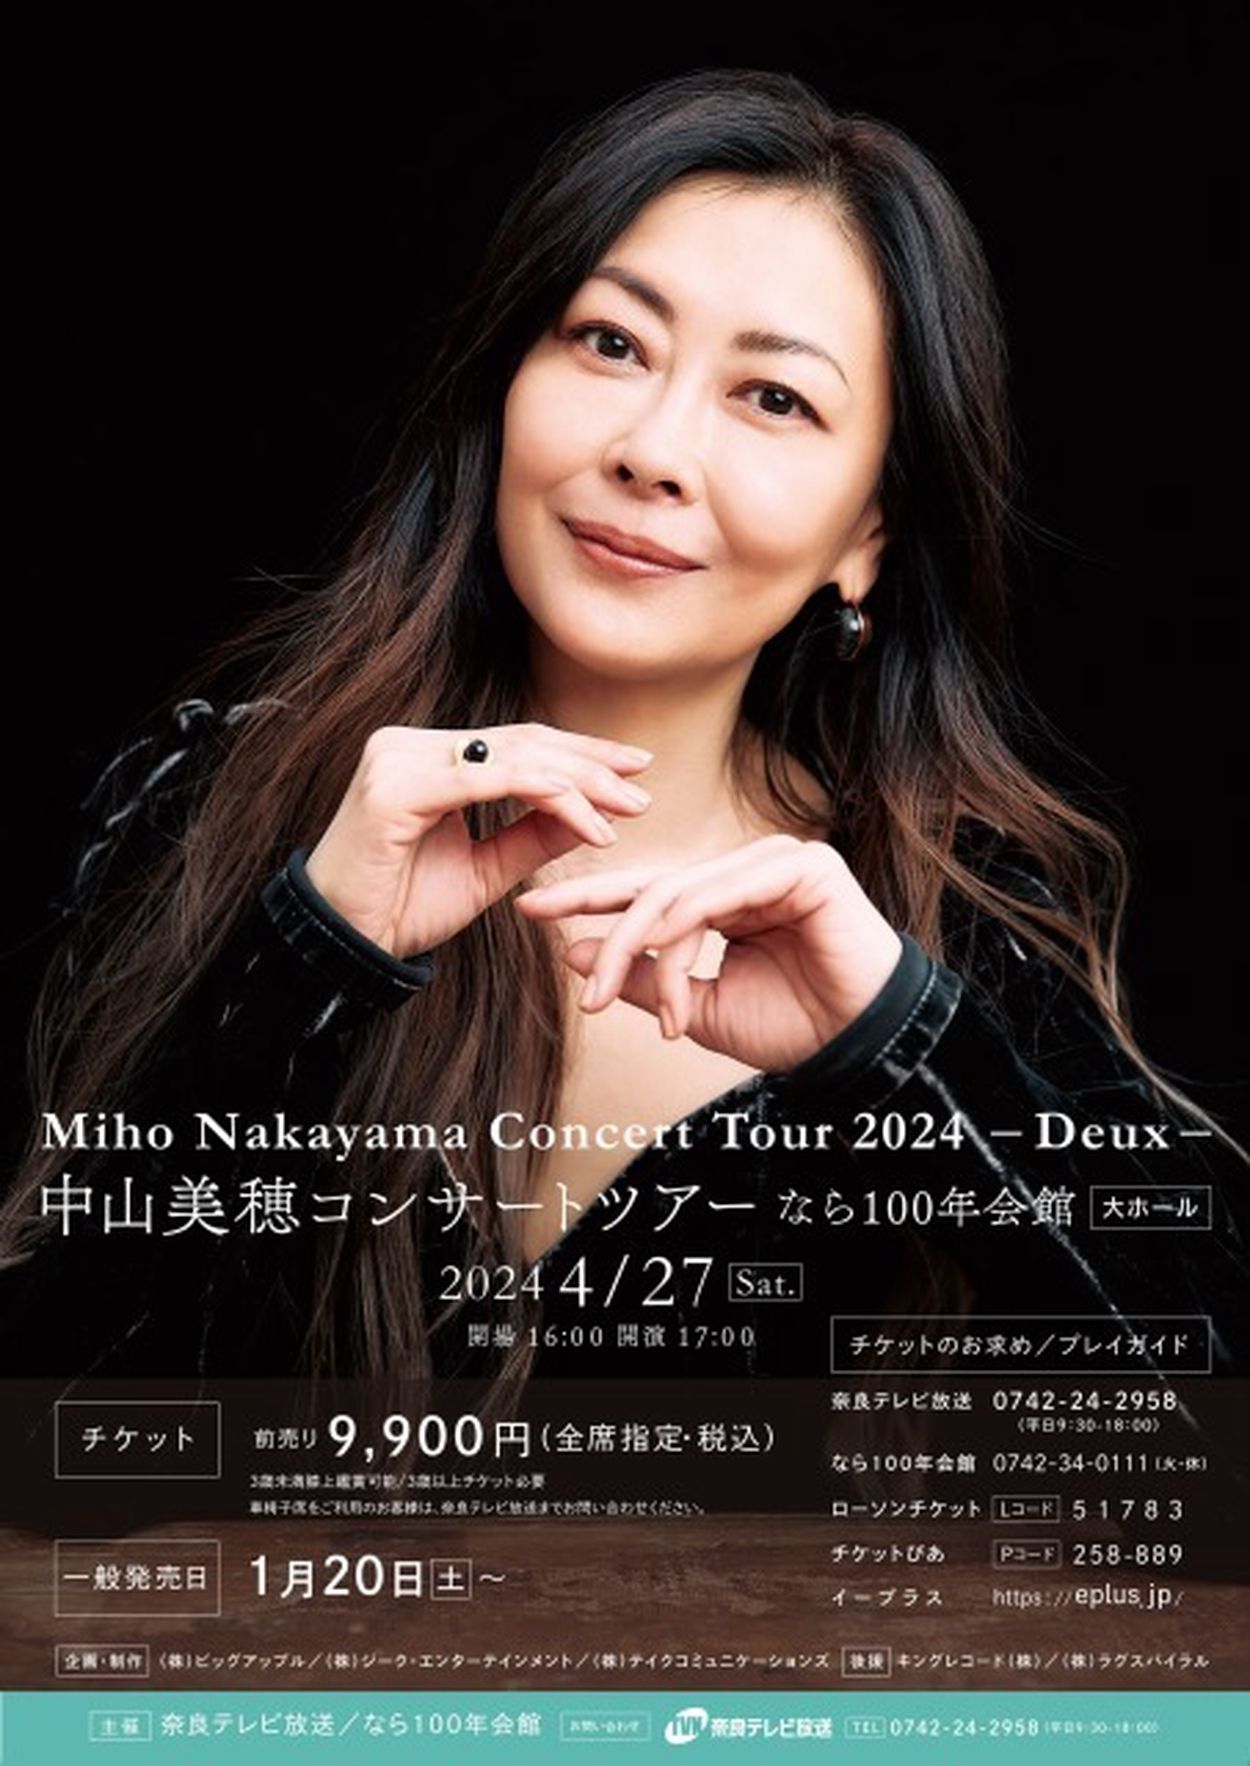 中山美穂 Miho Nakayama Concert Tour 2024-Deux-(EventBank プレス) - goo ニュース